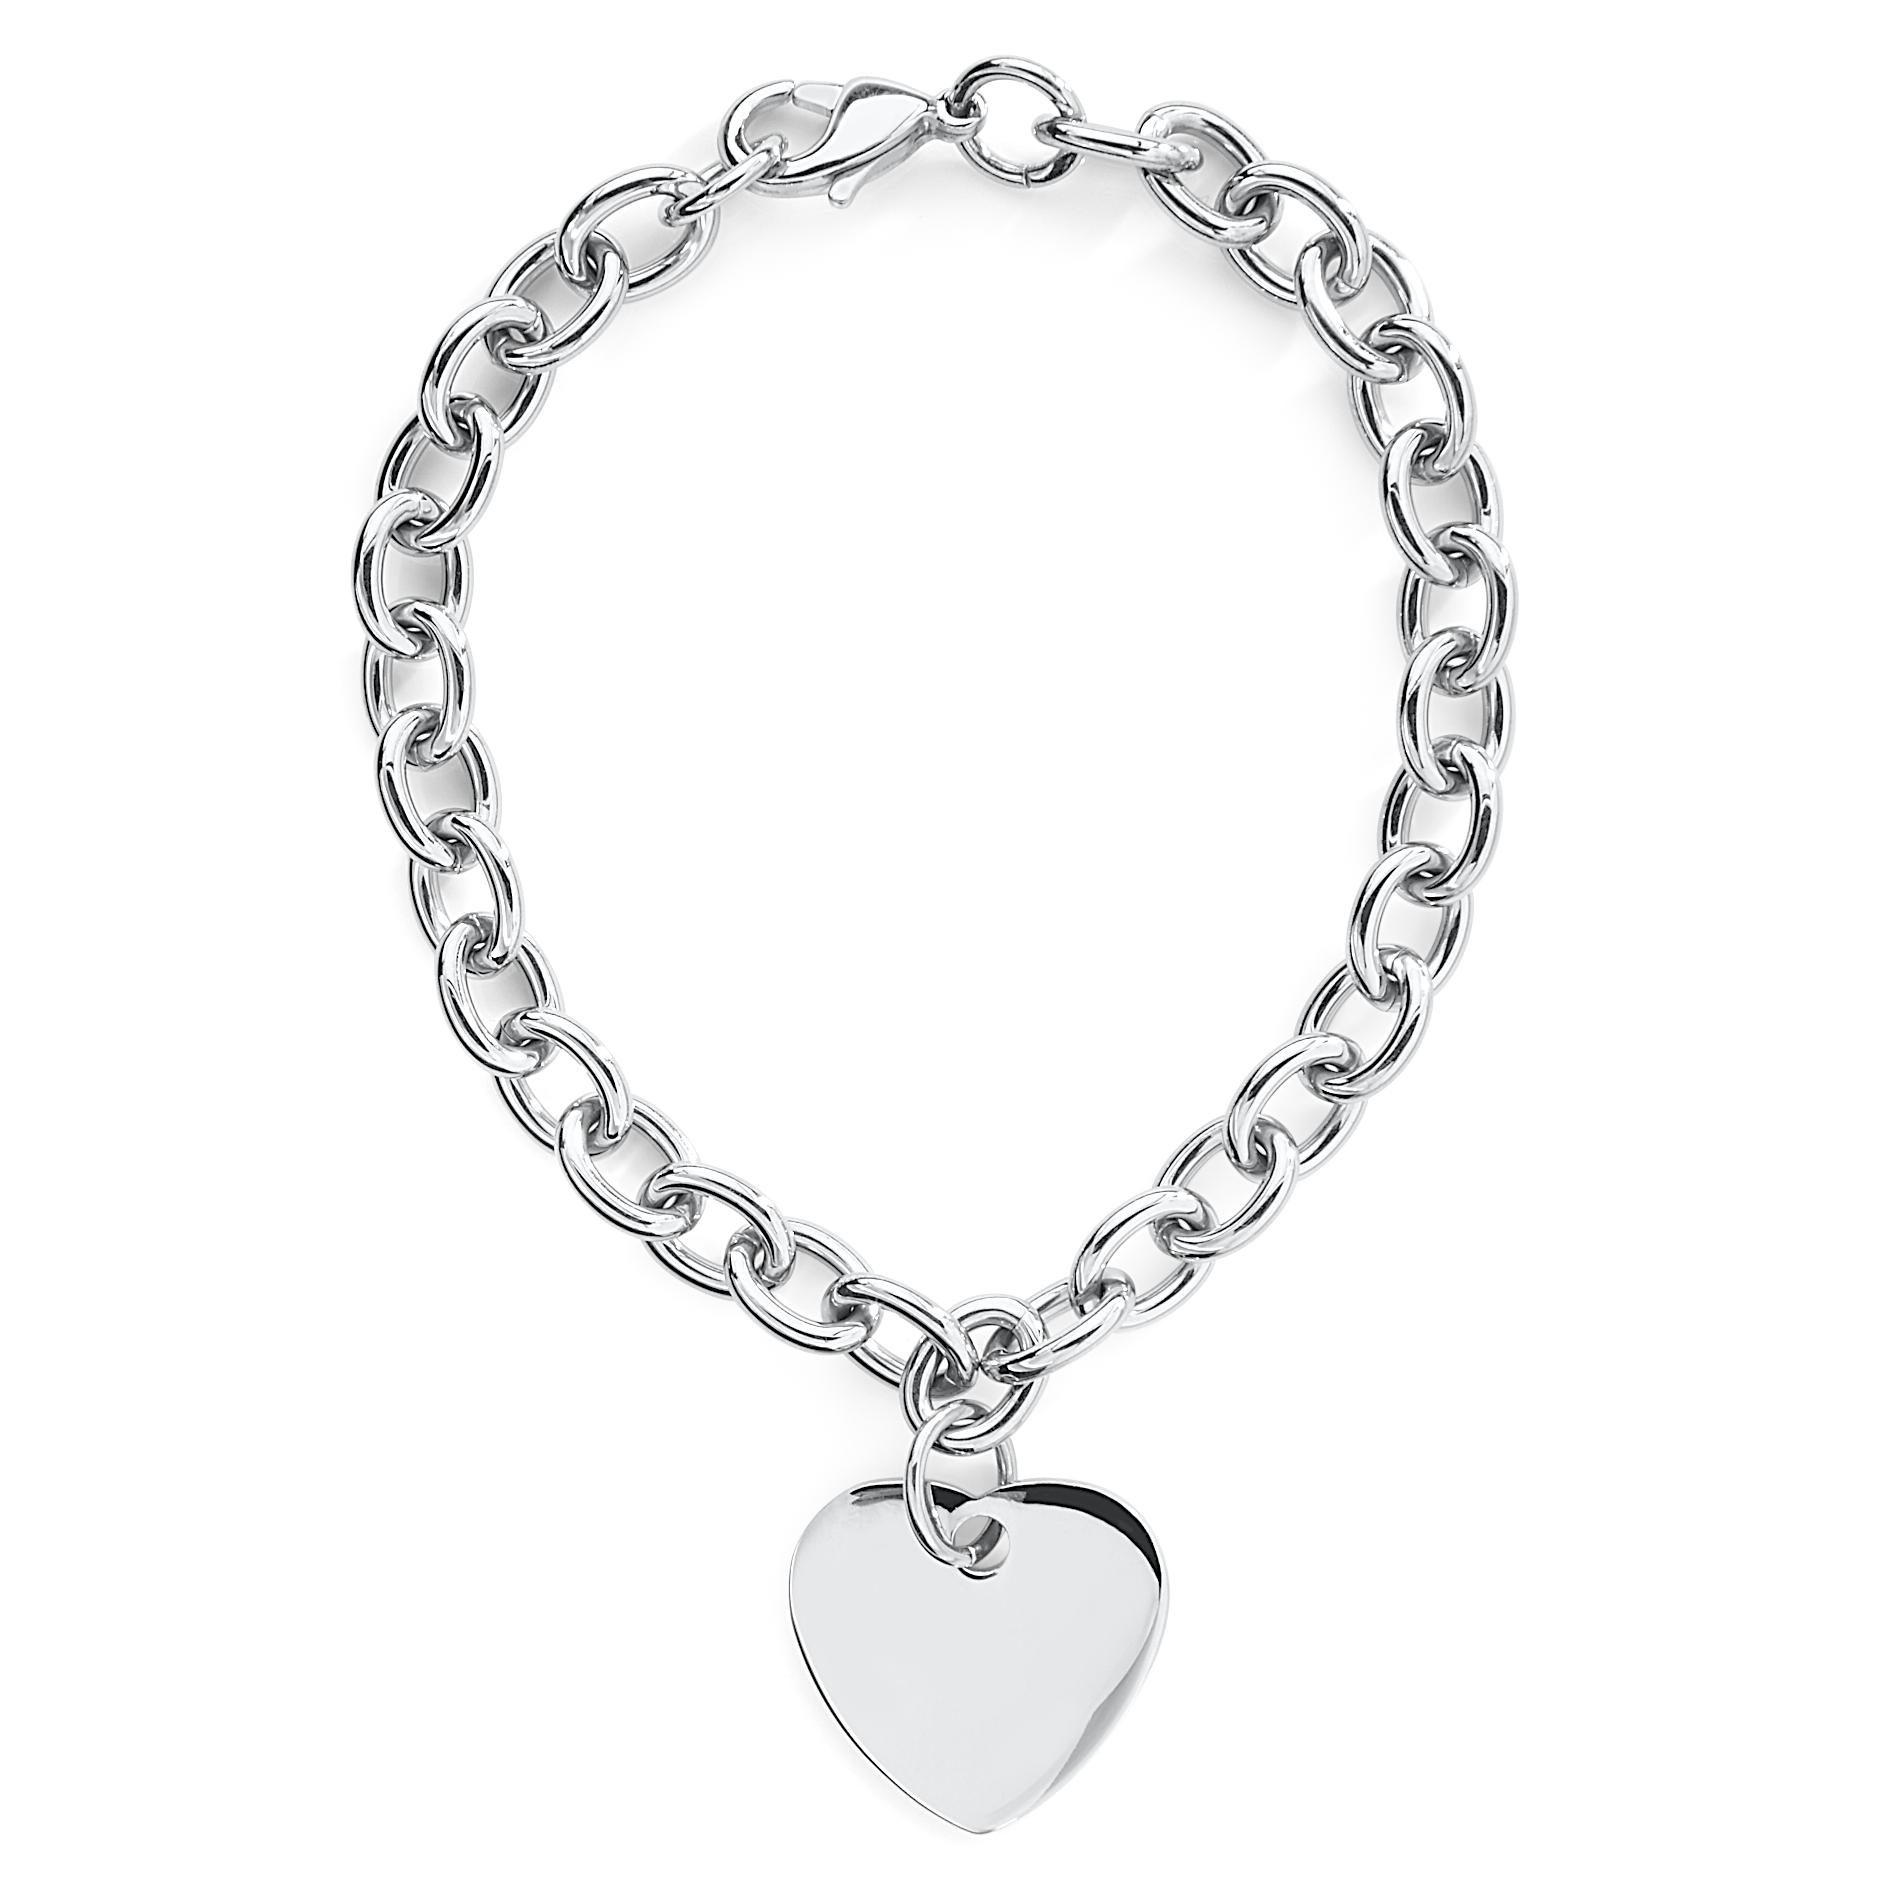 Stainless Steel Heart Charm Bracelet - Jewelry - Bracelets